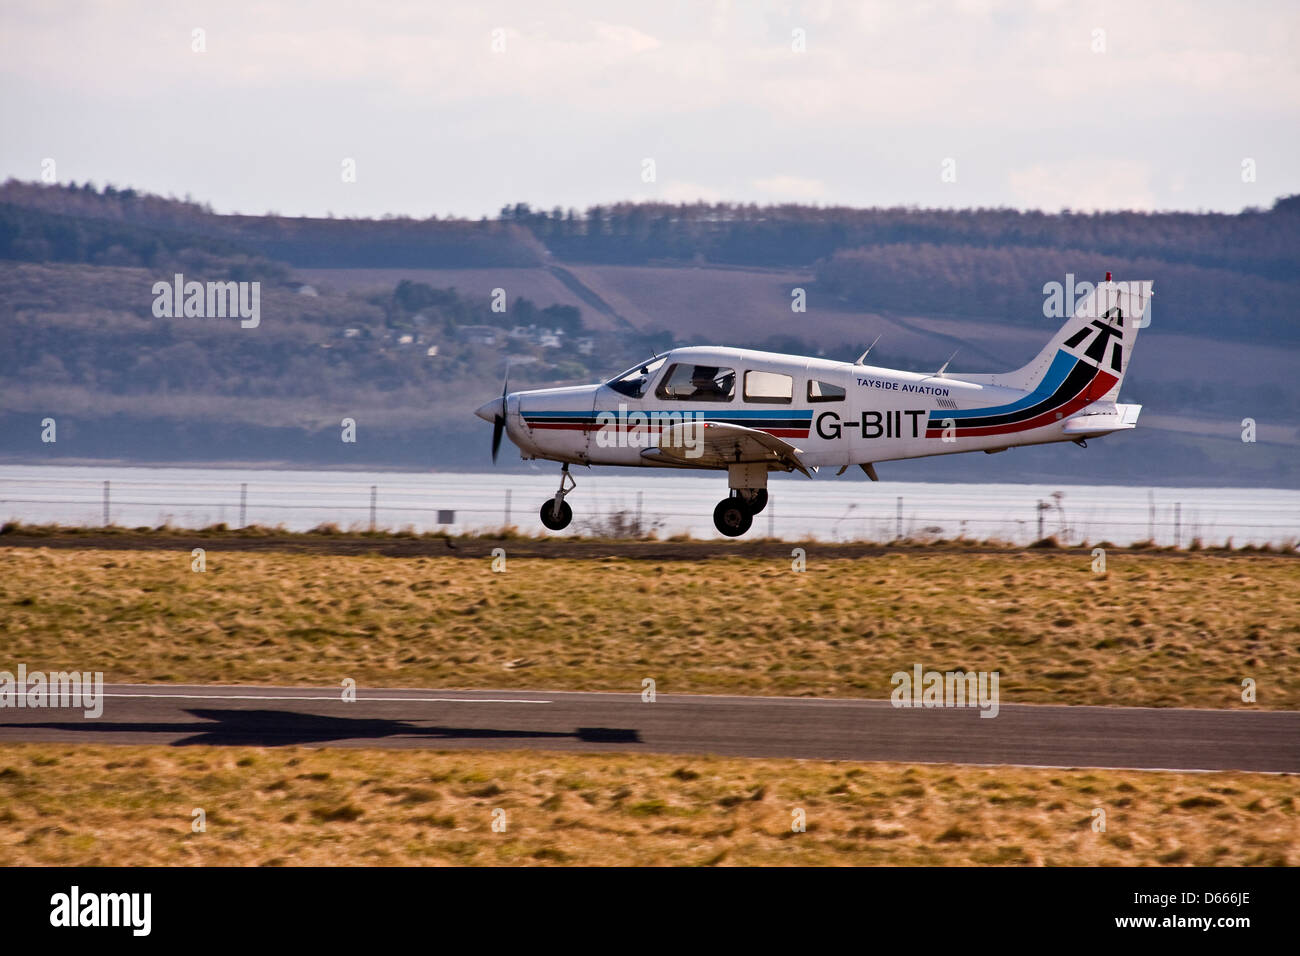 Aviation Tayside Piper PA-28 Warrior G-BIIT aéronefs atterrissant sur la piste de l'aéroport de Dundee, Royaume-Uni Banque D'Images